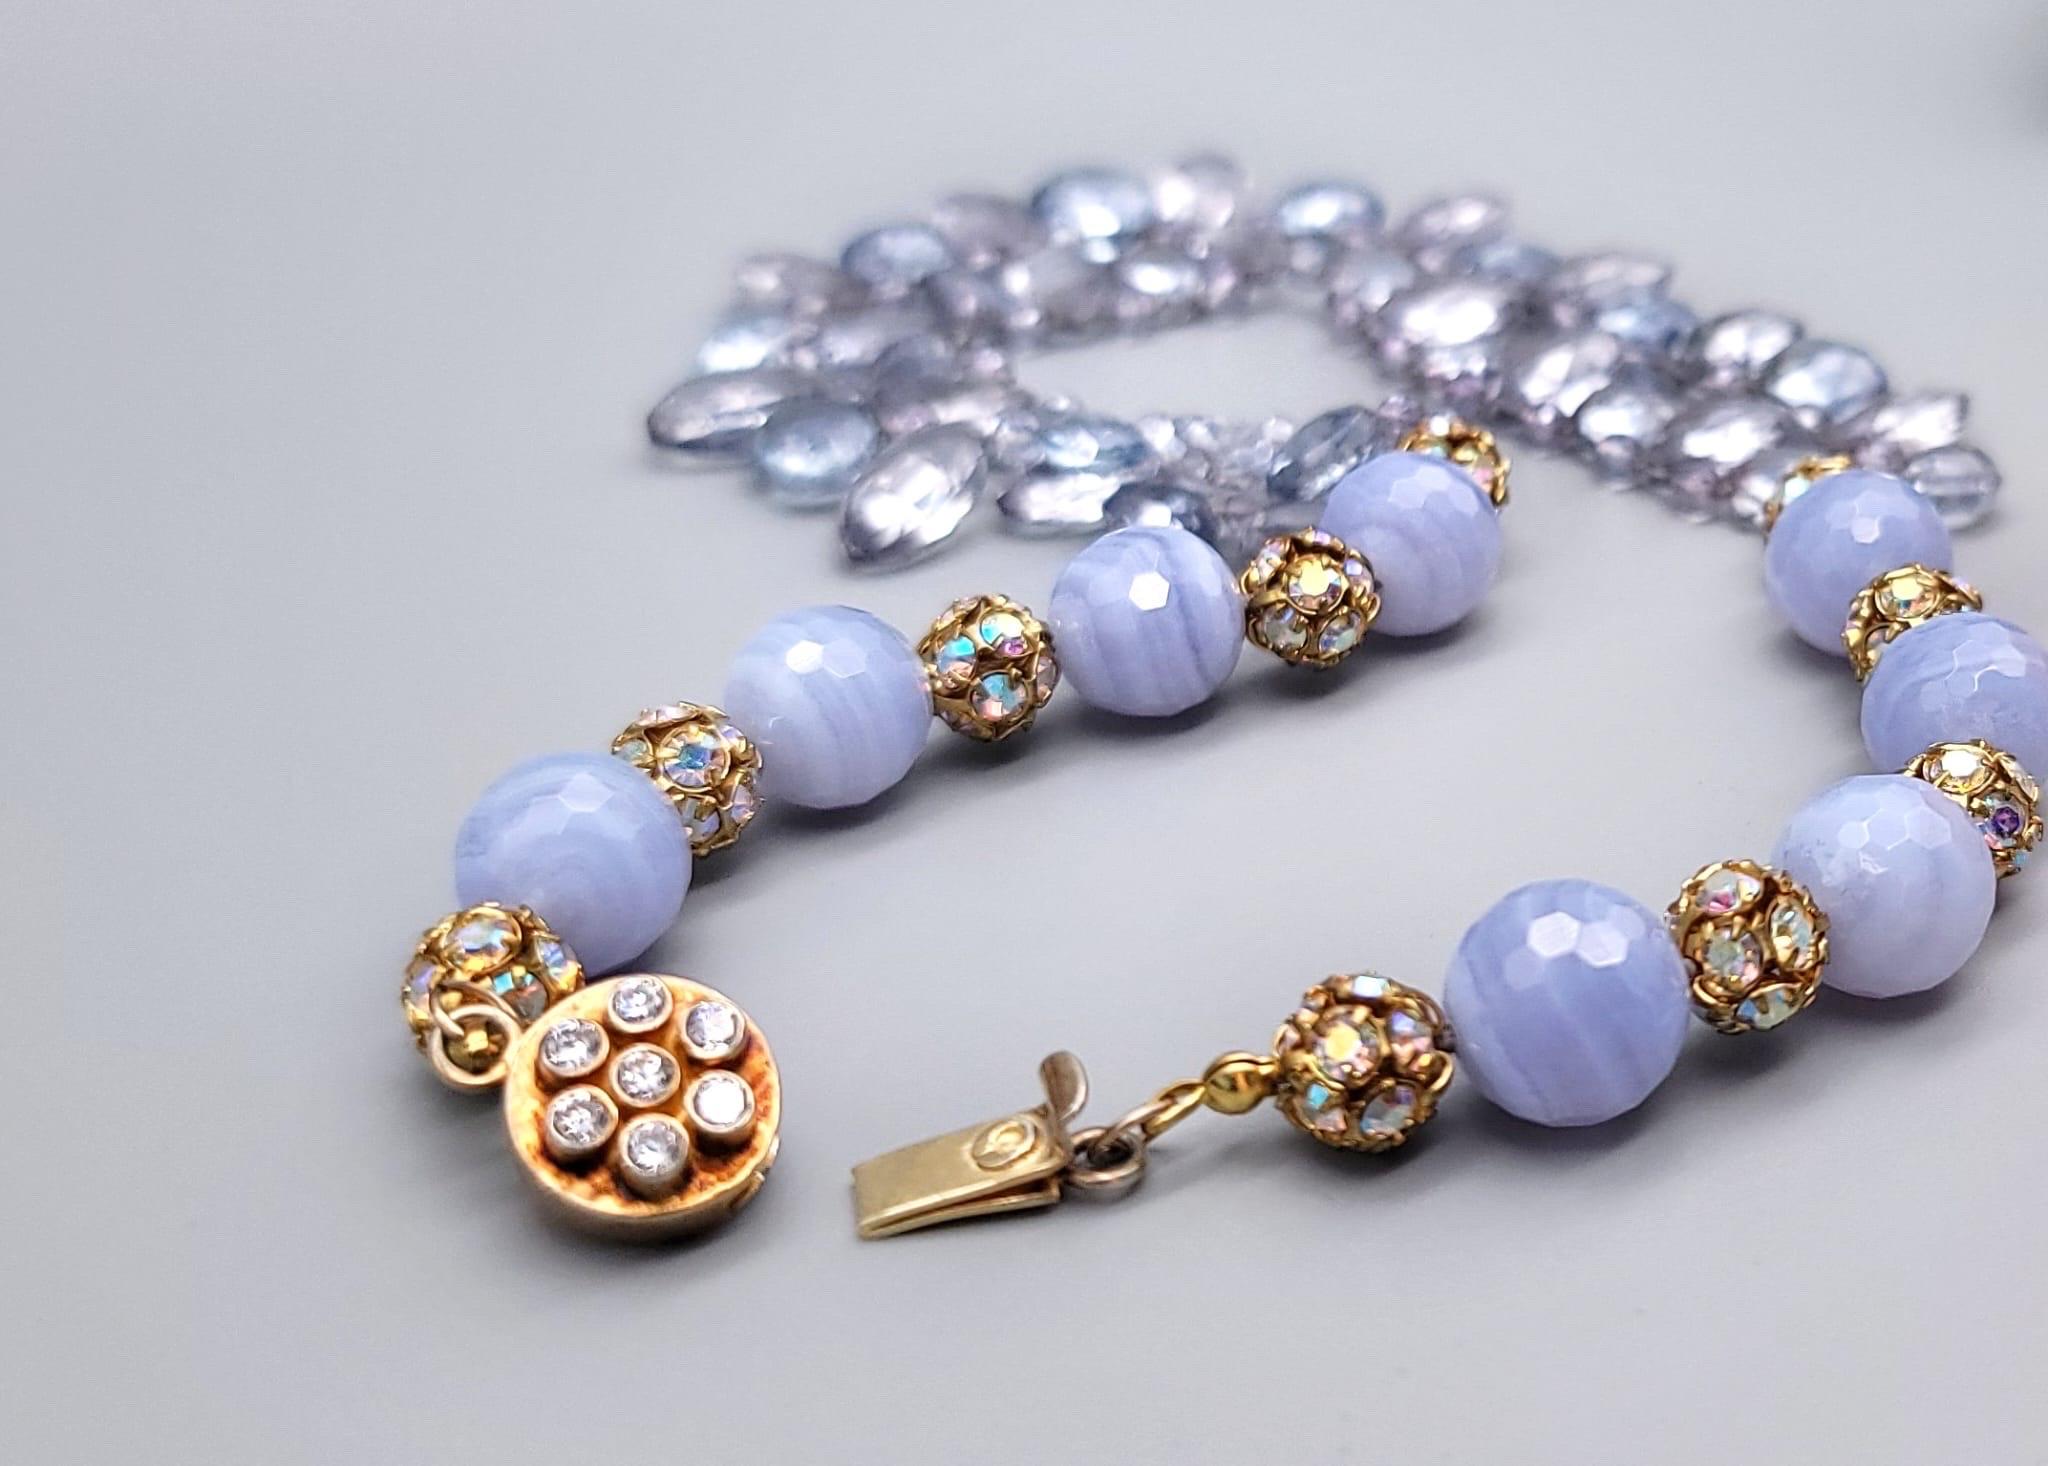 A.Jeschel Blue Quartz and Blue lace Agate Necklace. For Sale 1